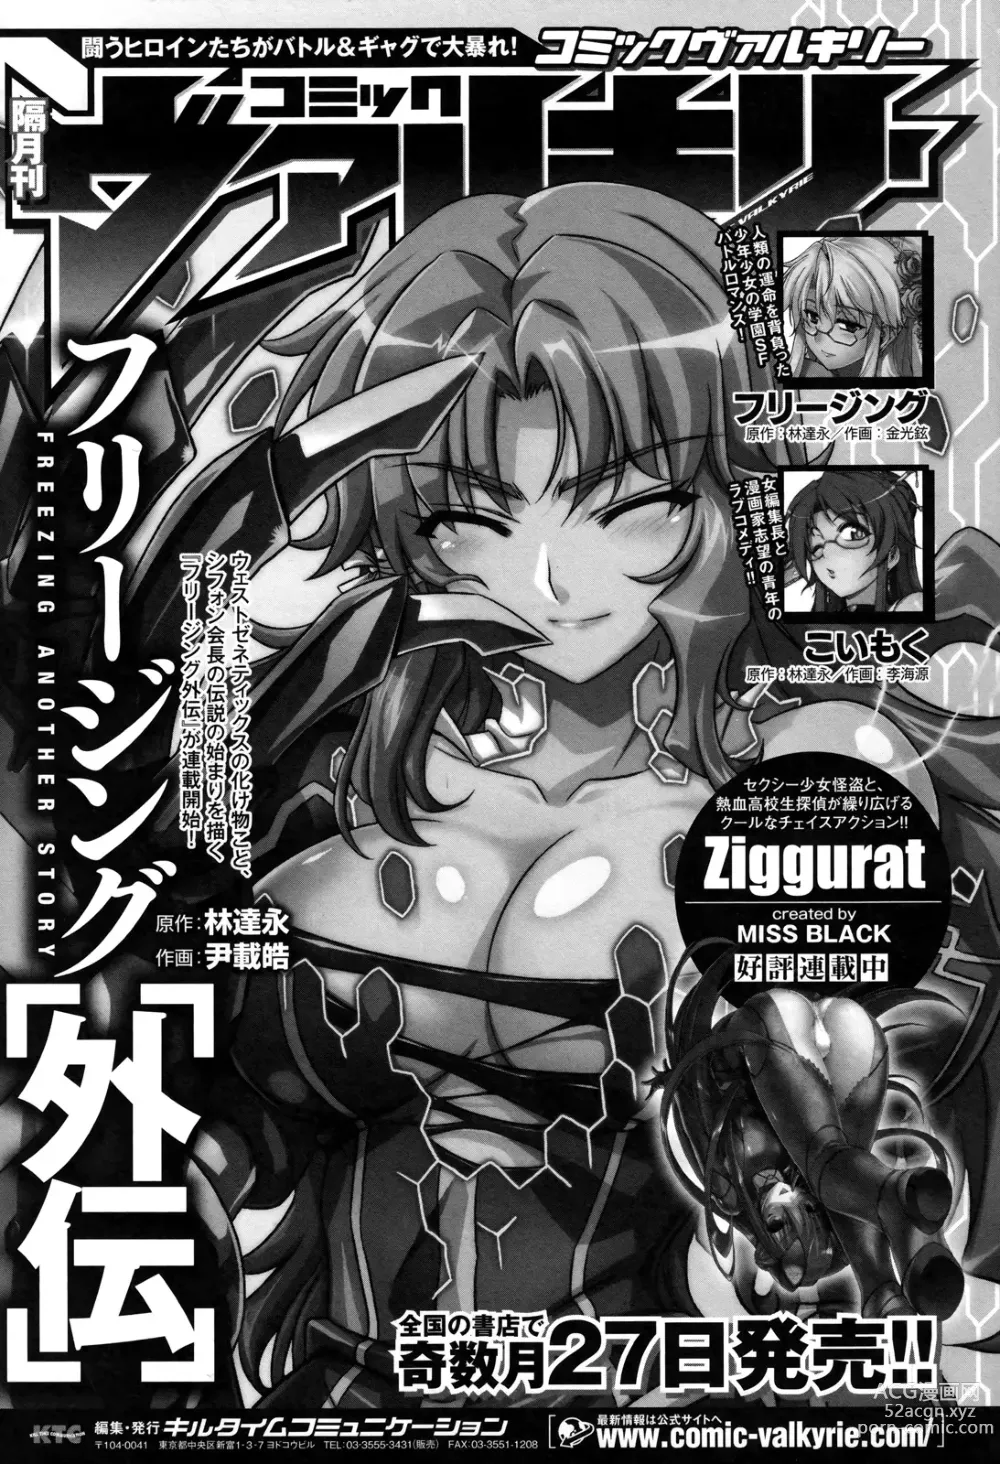 Page 194 of manga Ziggurat 2